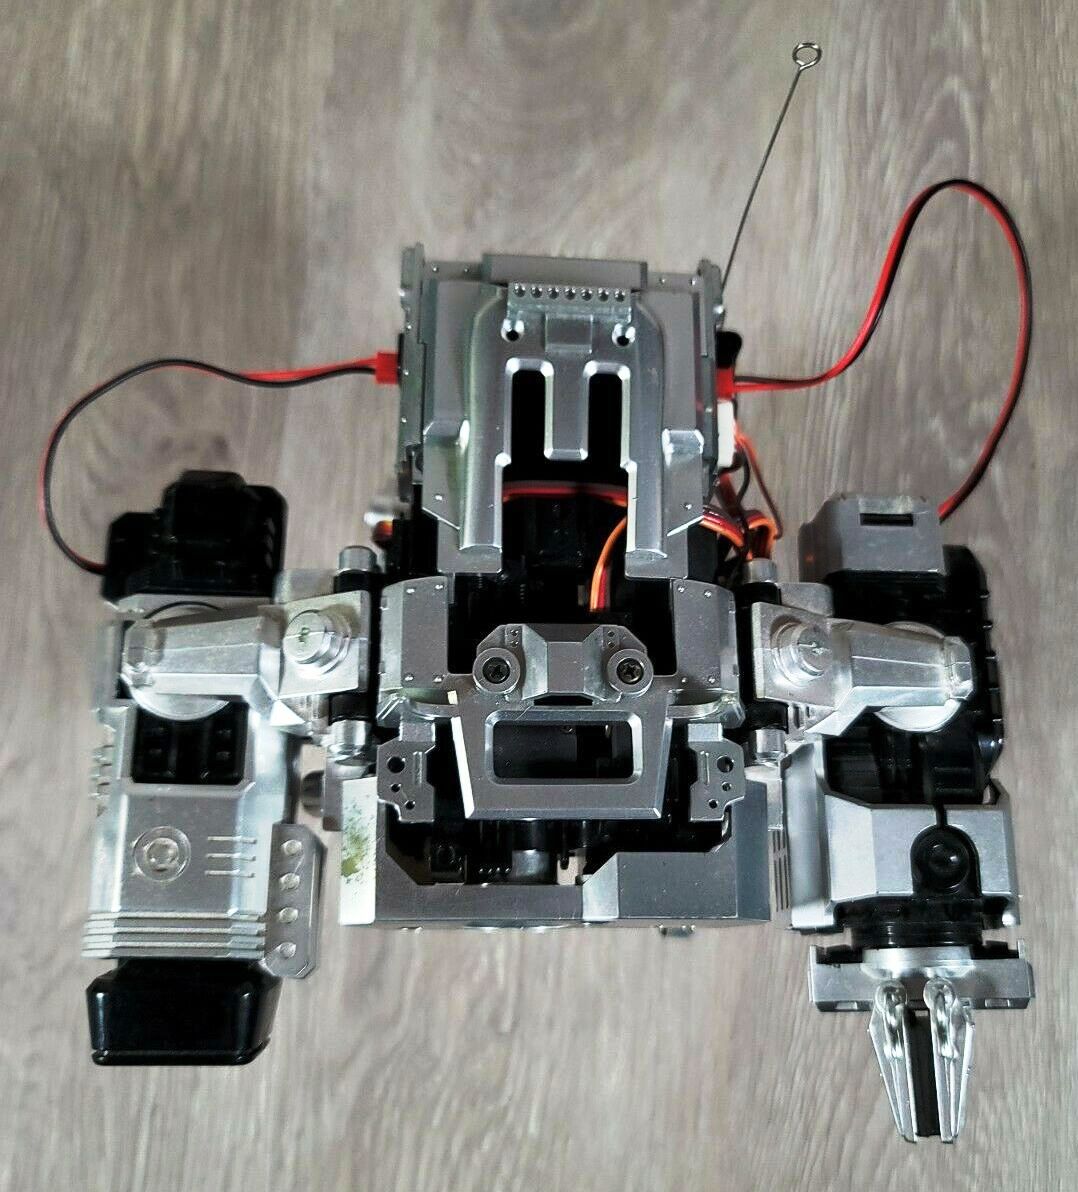 TXR-002 Robot by Tomy